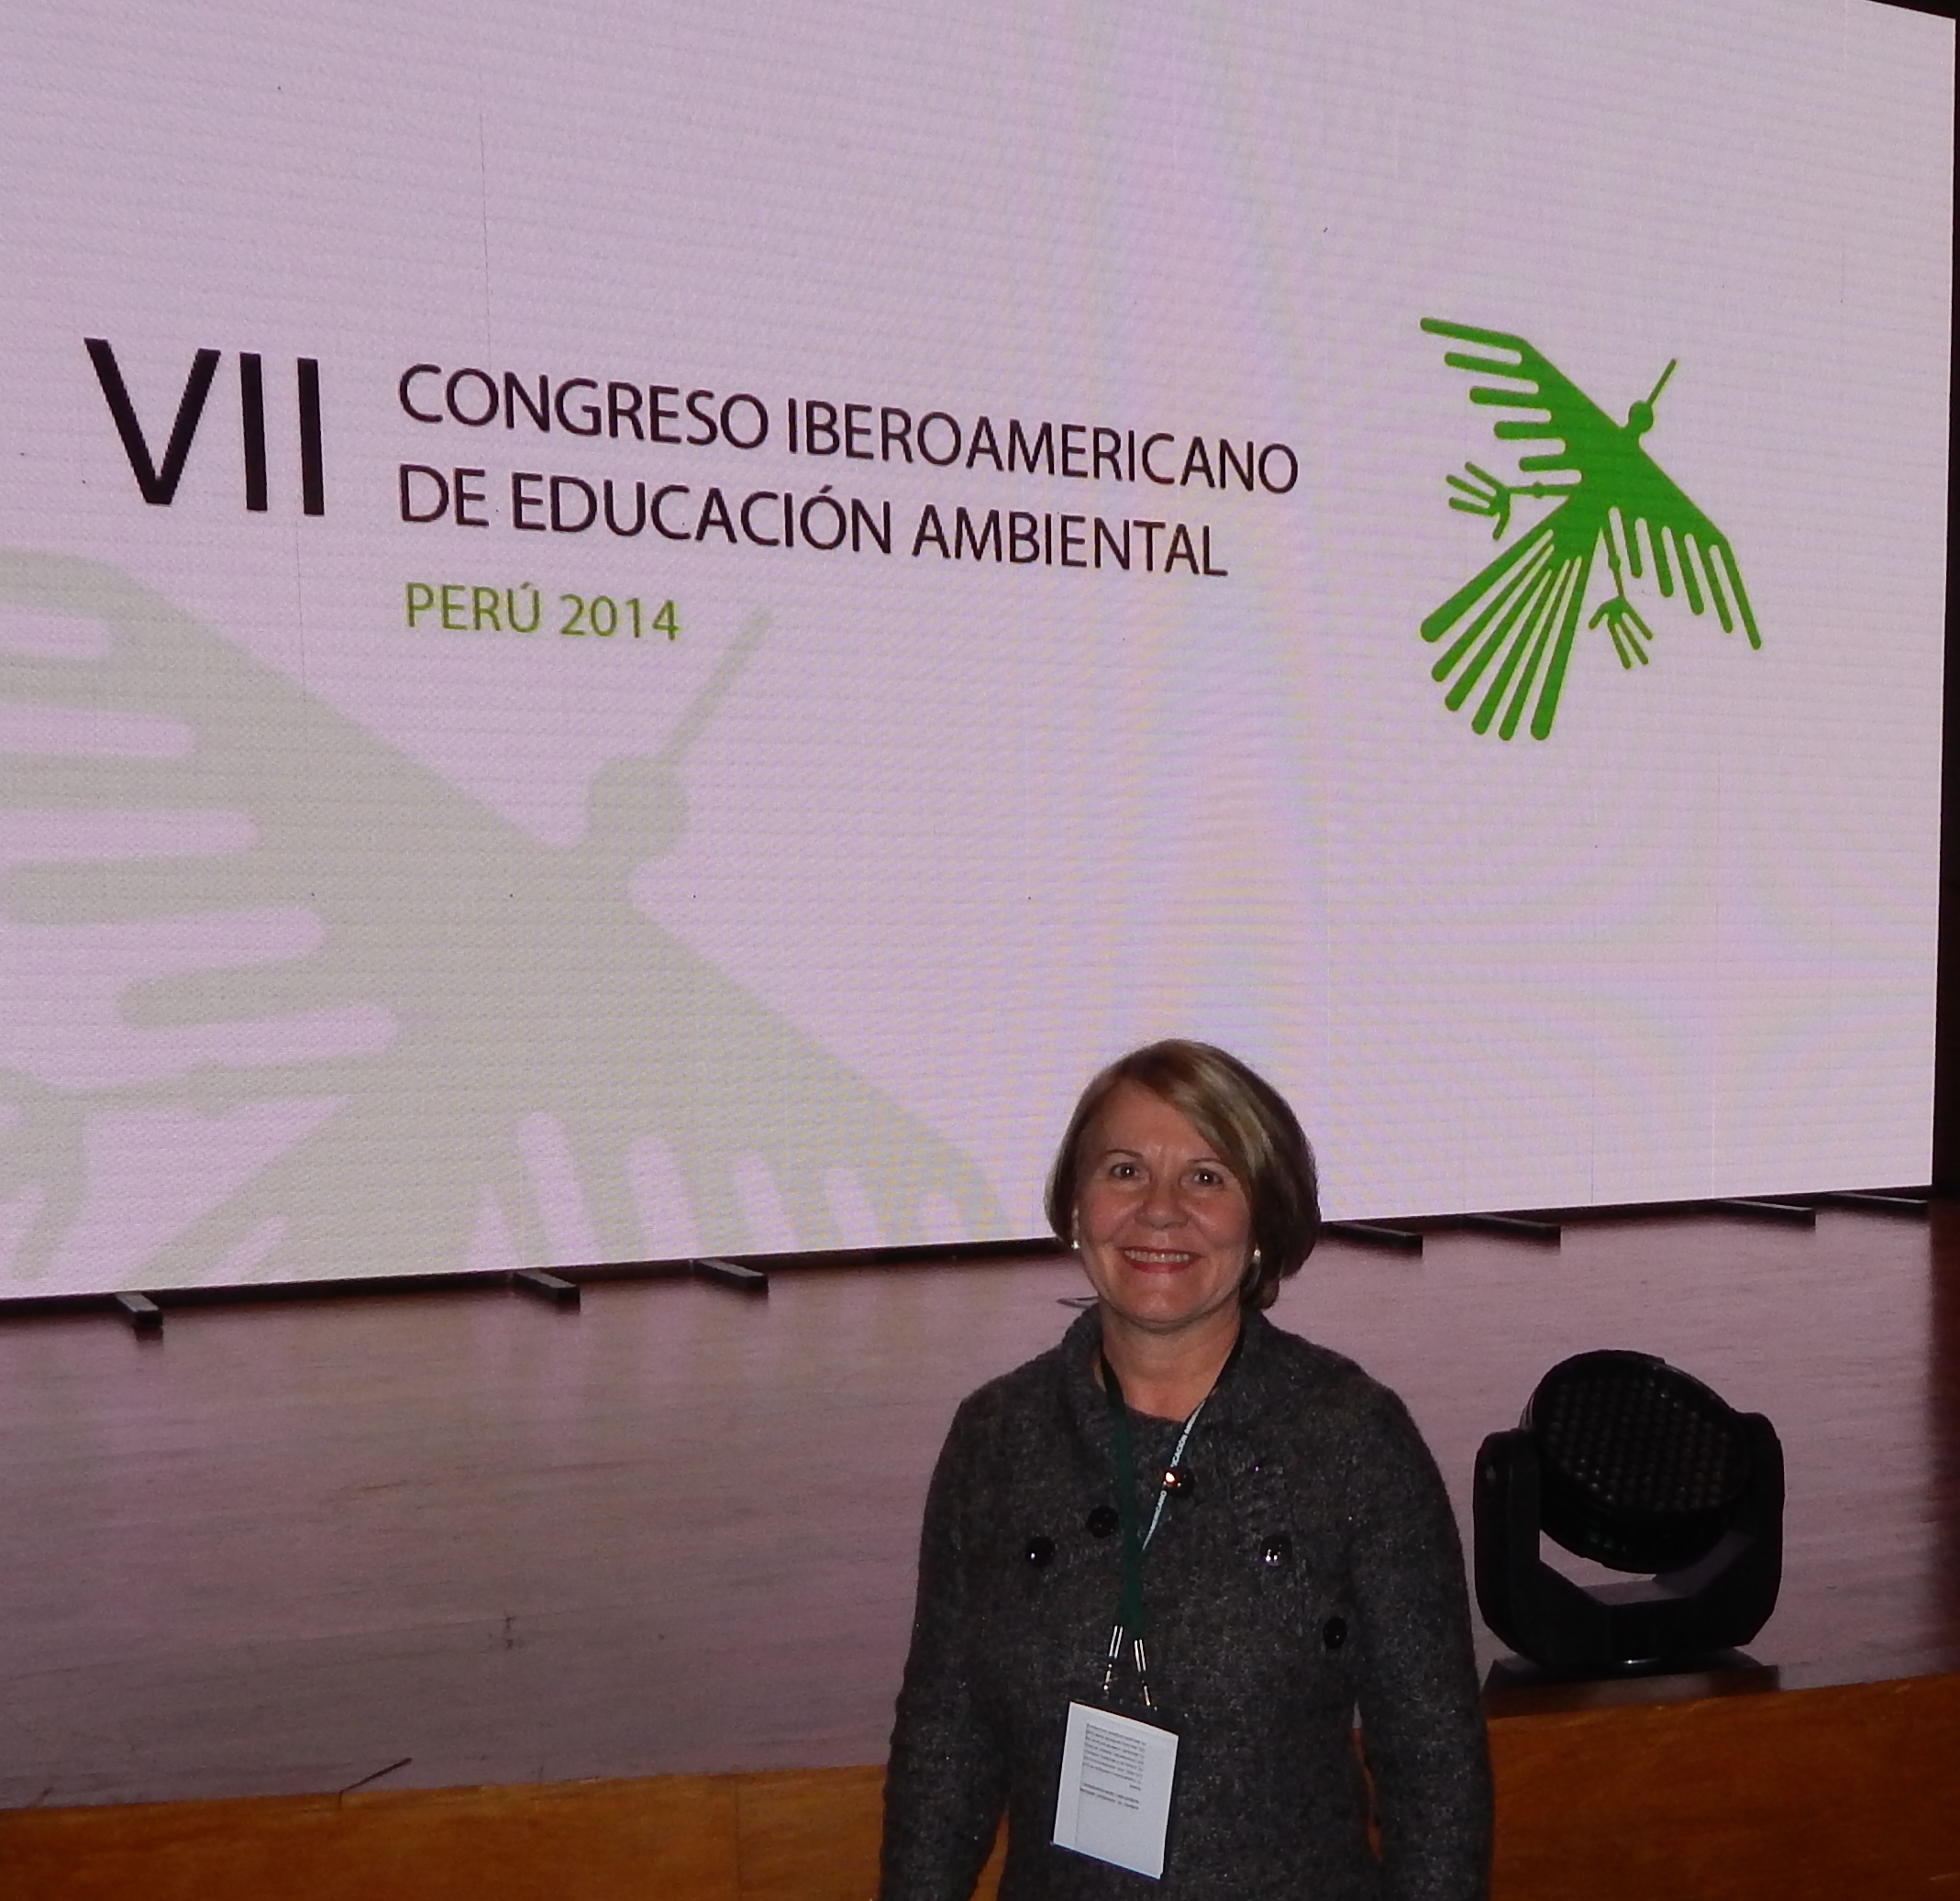 Professora participa de Congresso sobre Educação Ambiental em Lima no Peru